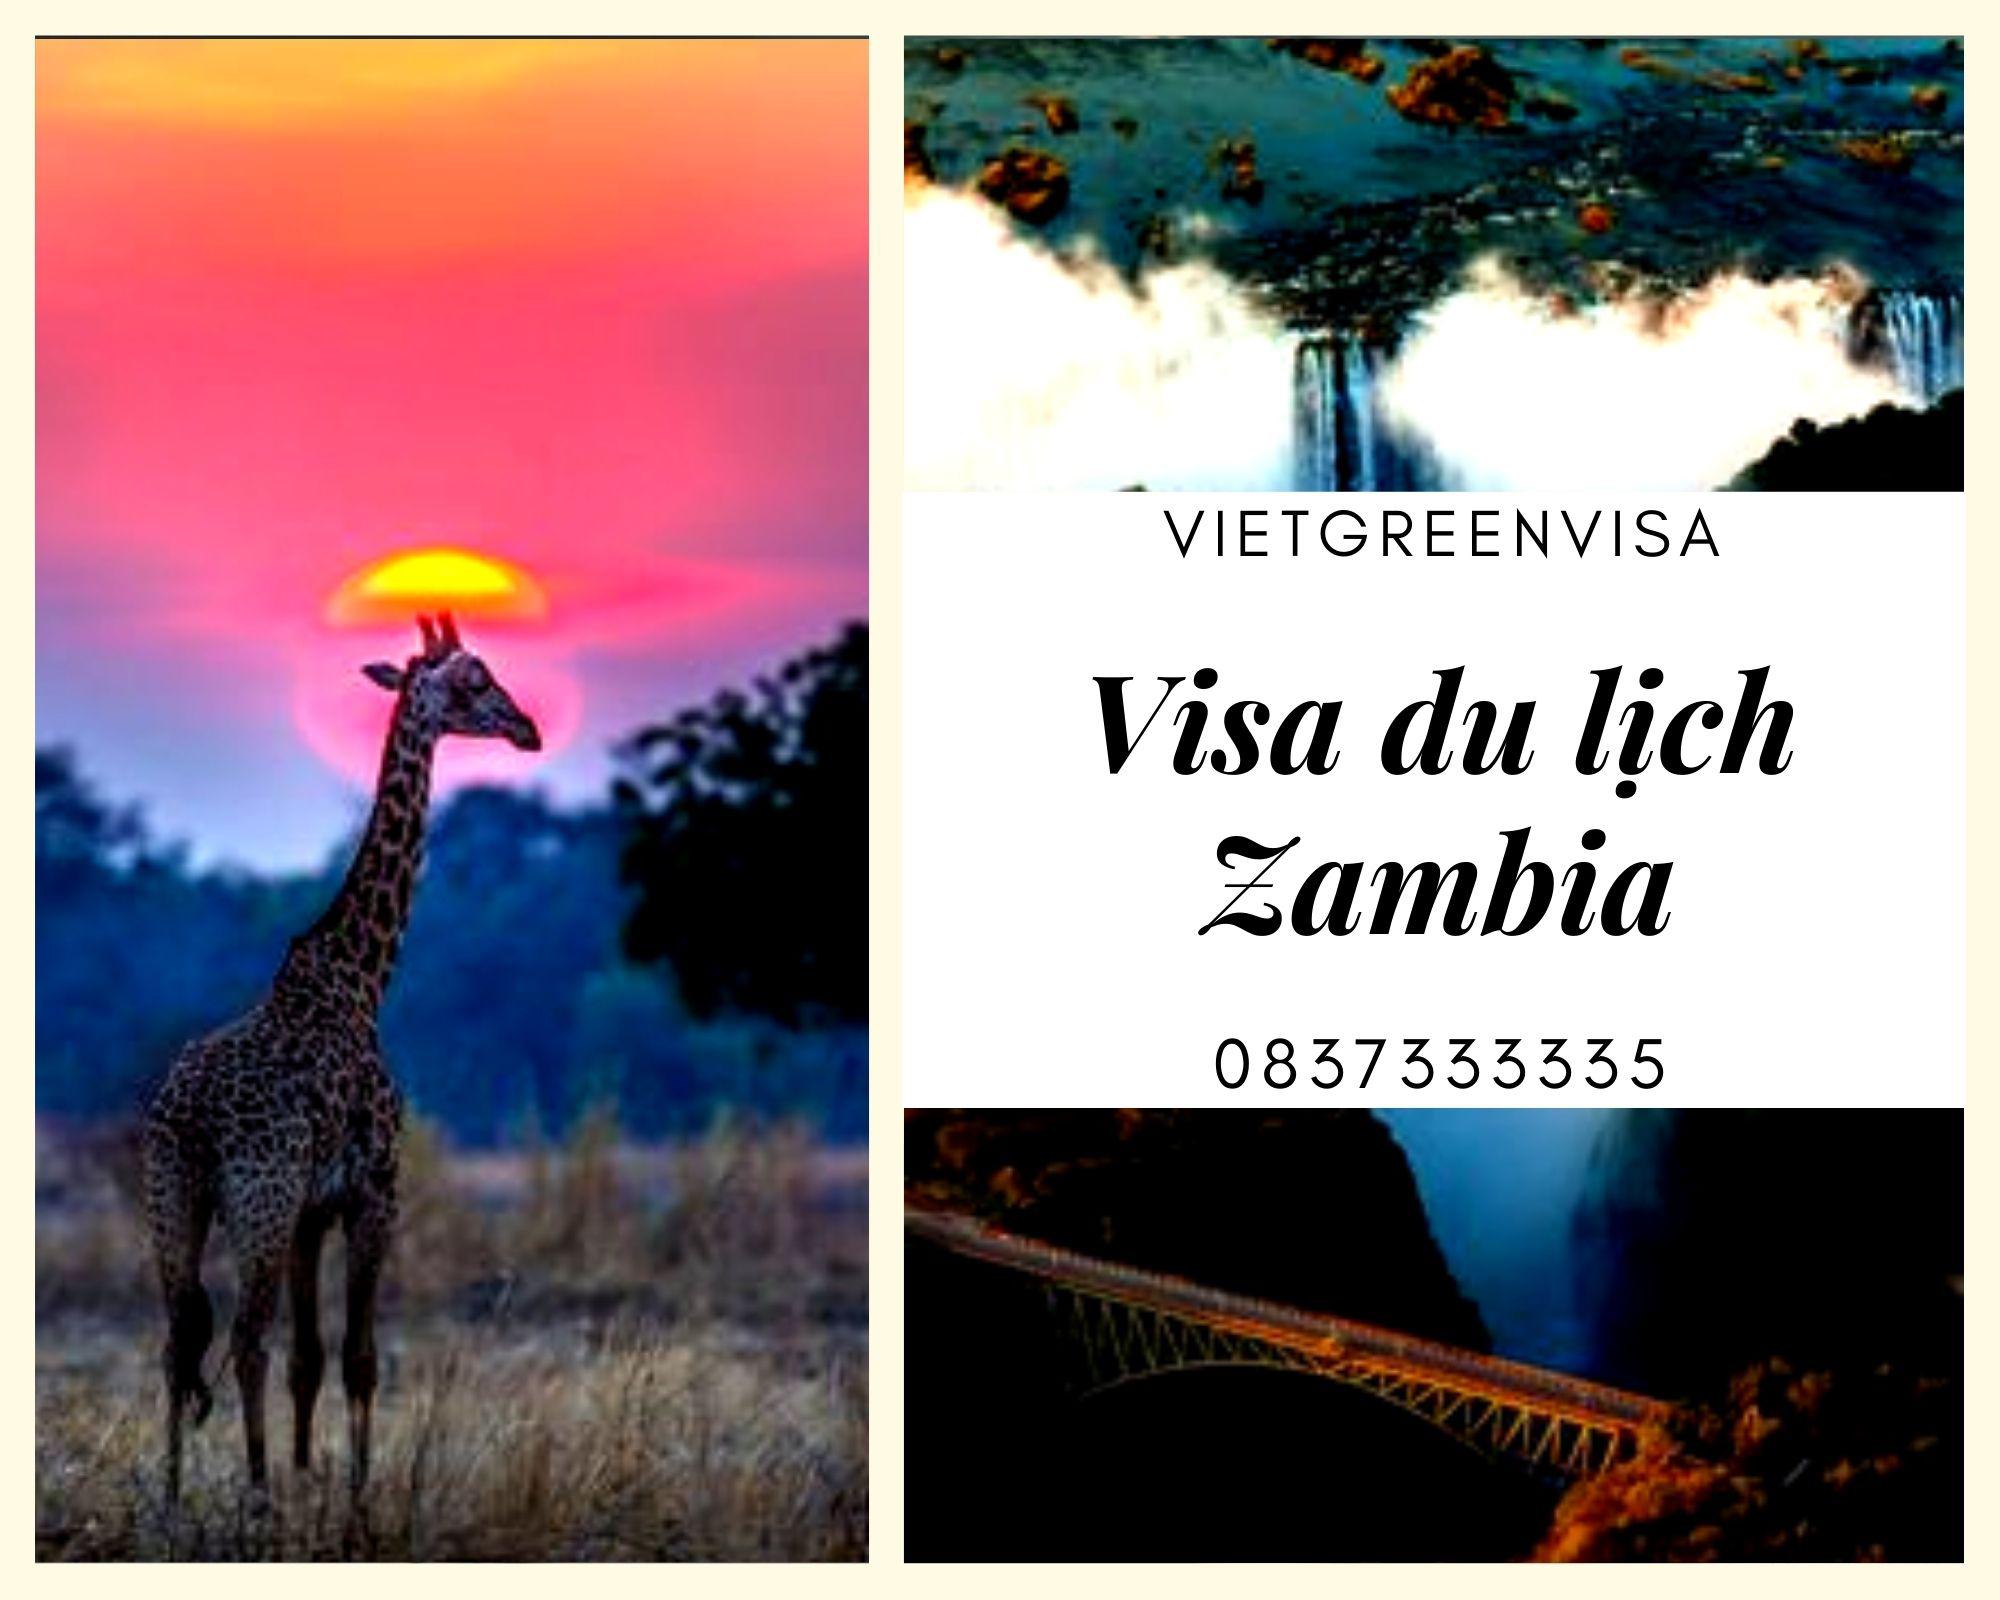 Làm visa du lịch Zambia nhanh chóng